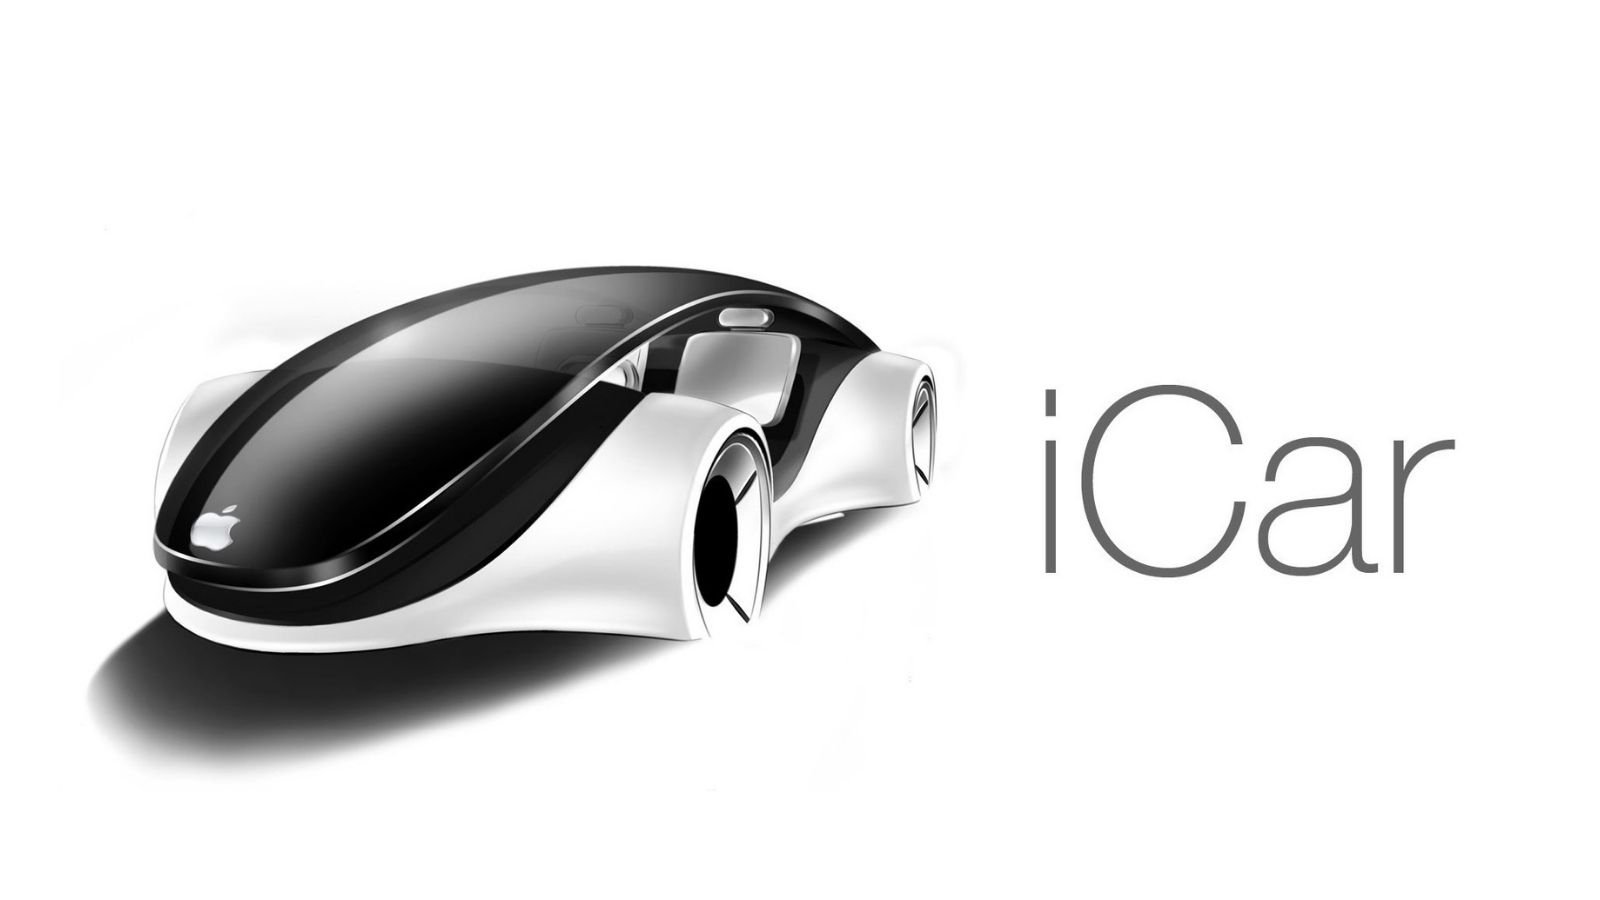 Uzun yıllardır beklenen Apple Car için nihayet üzücü haber geldi. Yapılan resmi duyuruyla bu projenin iptal olduğu resmen açıklandı.